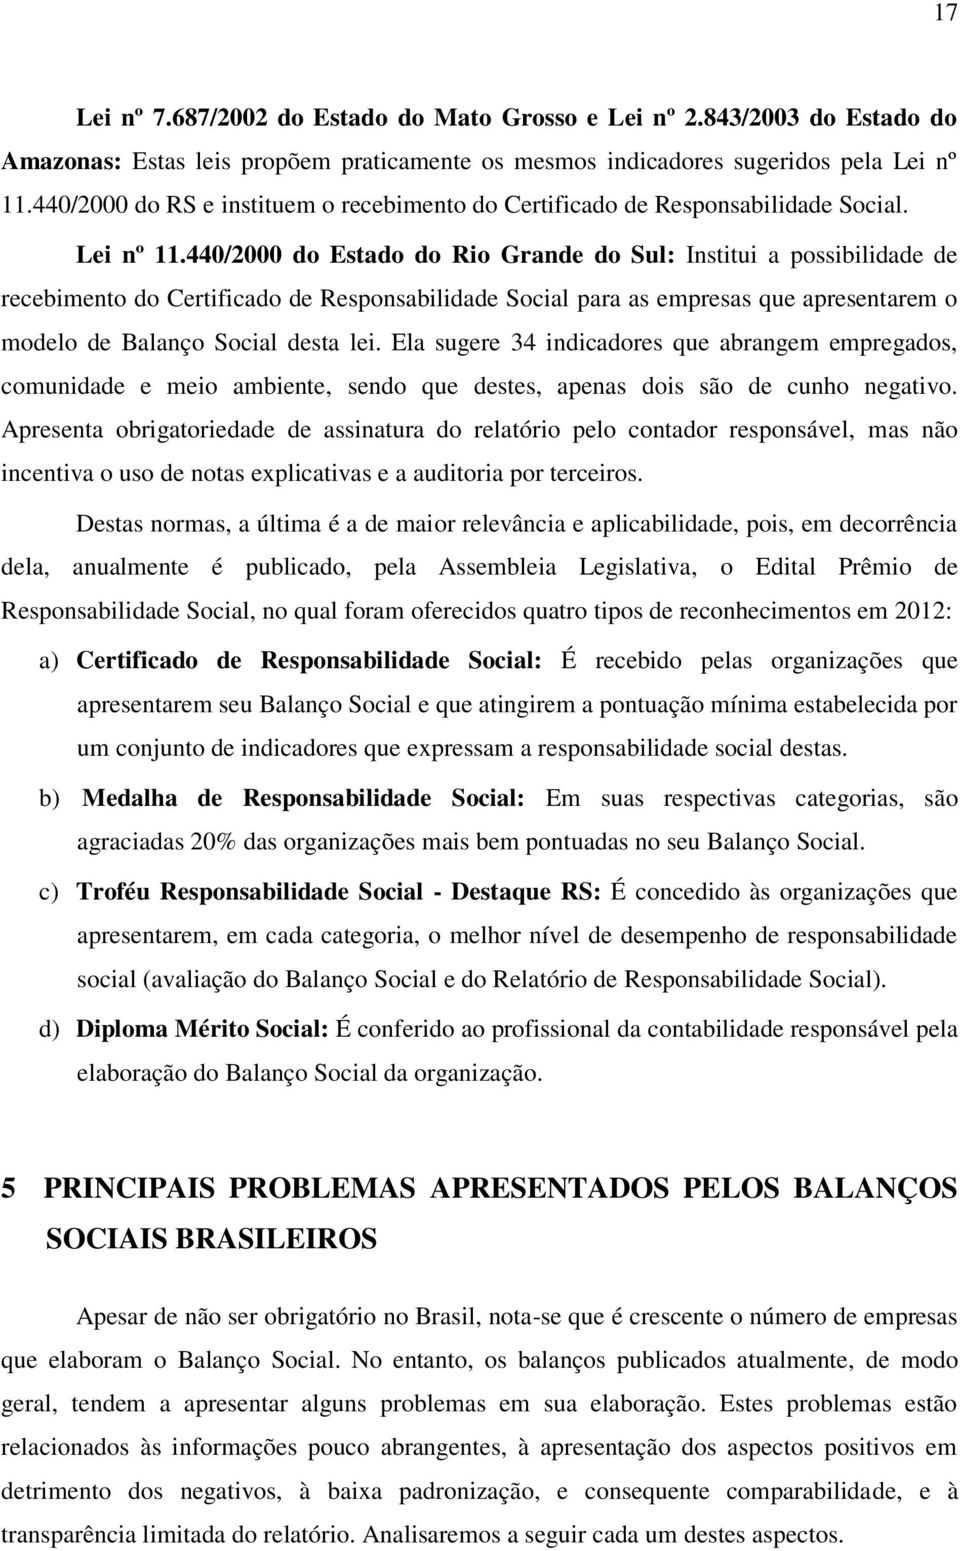 440/2000 do Estado do Rio Grande do Sul: Institui a possibilidade de recebimento do Certificado de Responsabilidade Social para as empresas que apresentarem o modelo de Balanço Social desta lei.